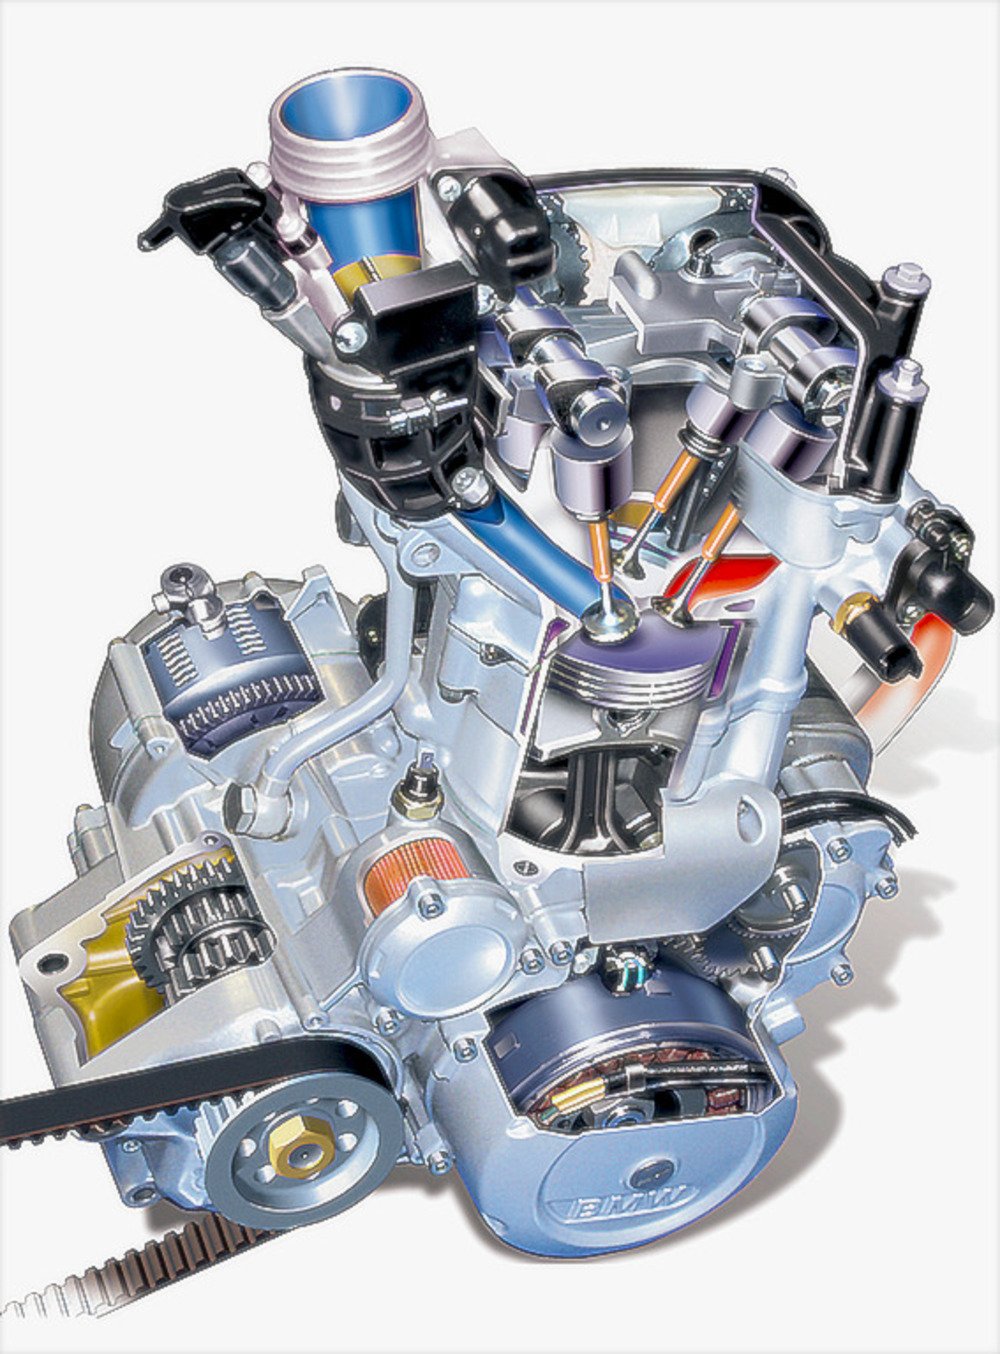 Il motore bialbero nato come Rotax 655 &egrave; stato debitamente riveduto dalla BMW per essere impiegato sulla F 650 nel 1993. Pure in questo caso l&rsquo;alesaggio era di 100 mm